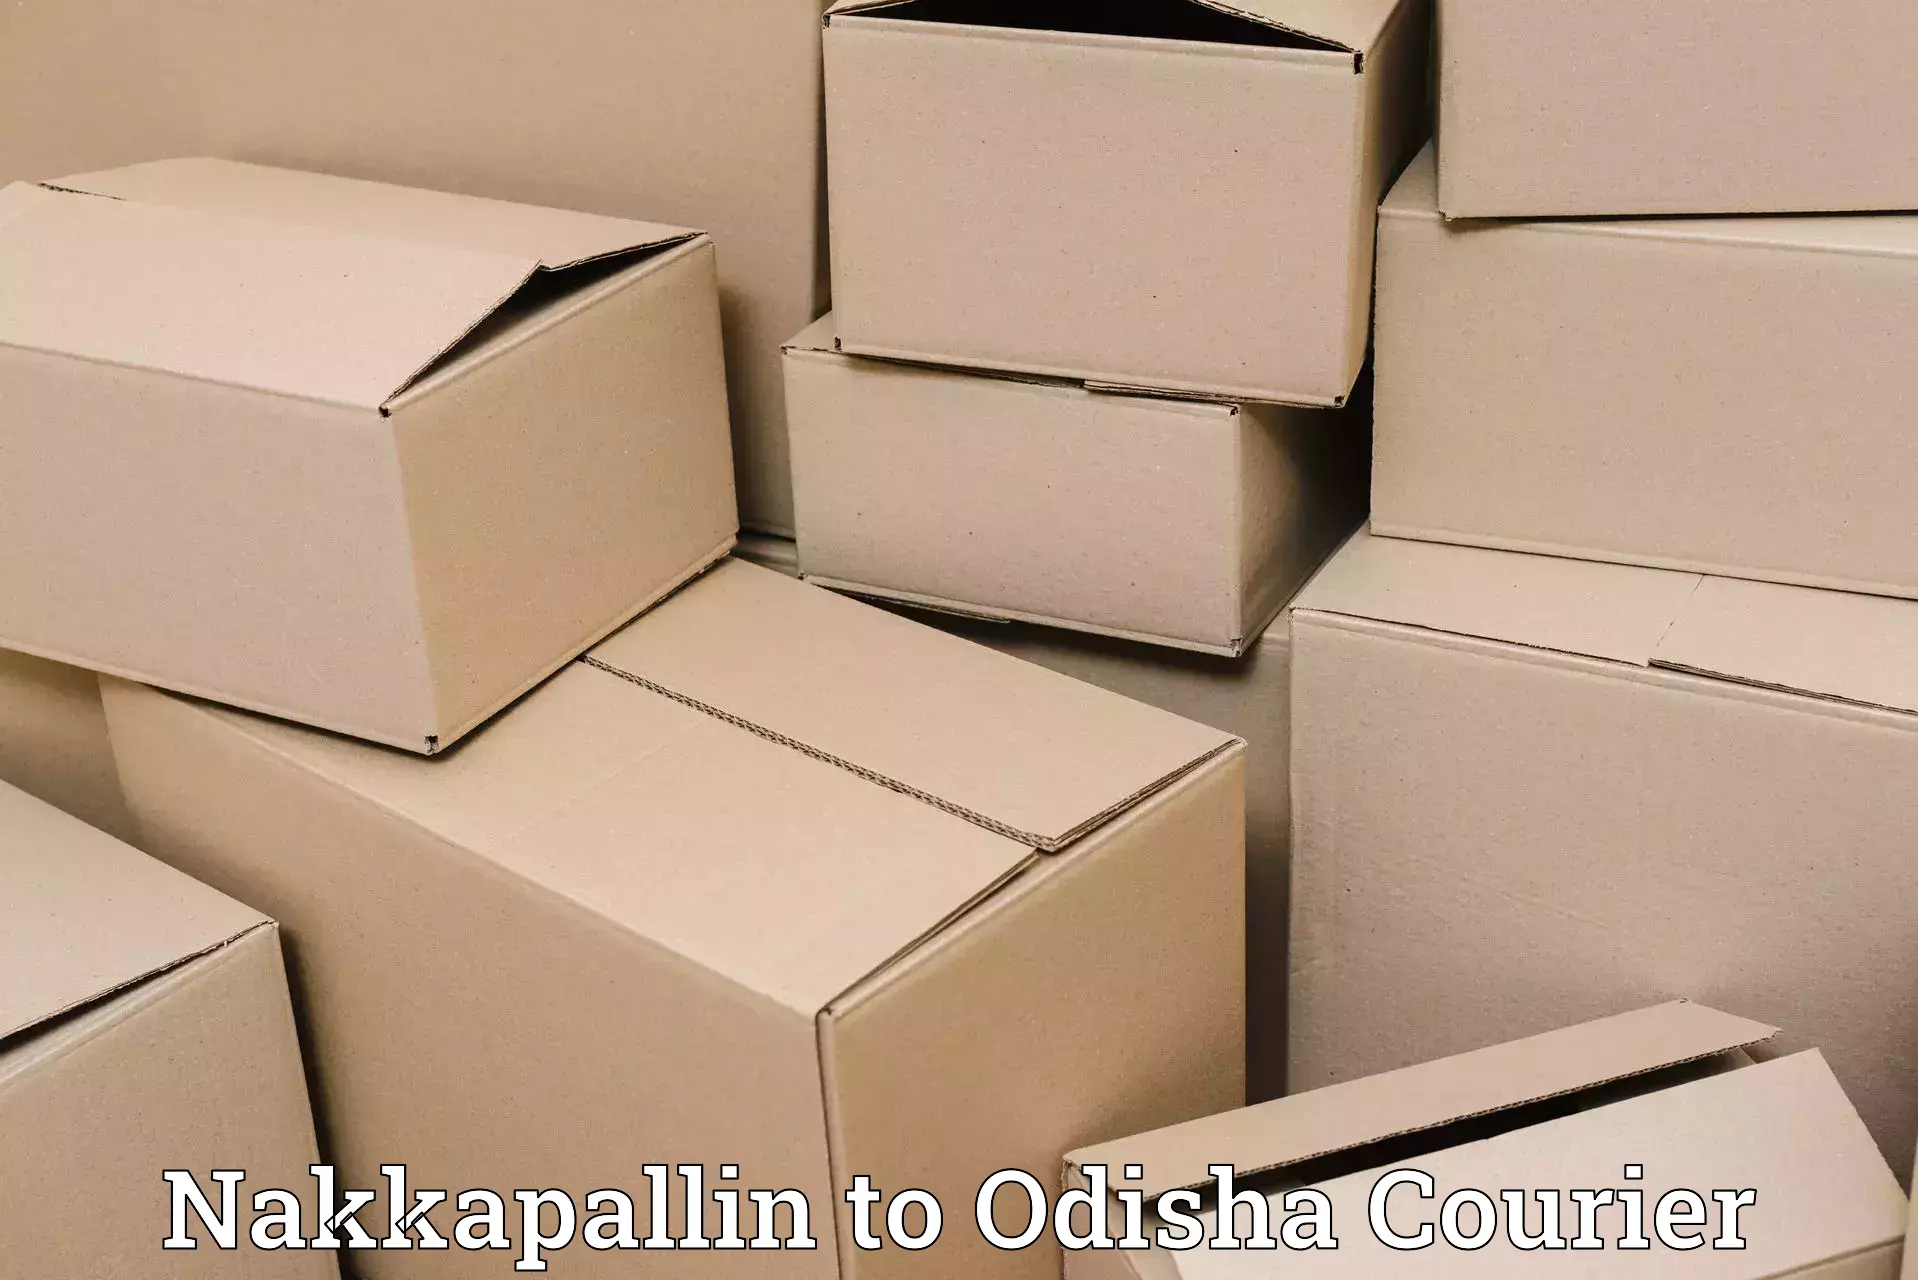 Versatile courier options Nakkapallin to Tihidi